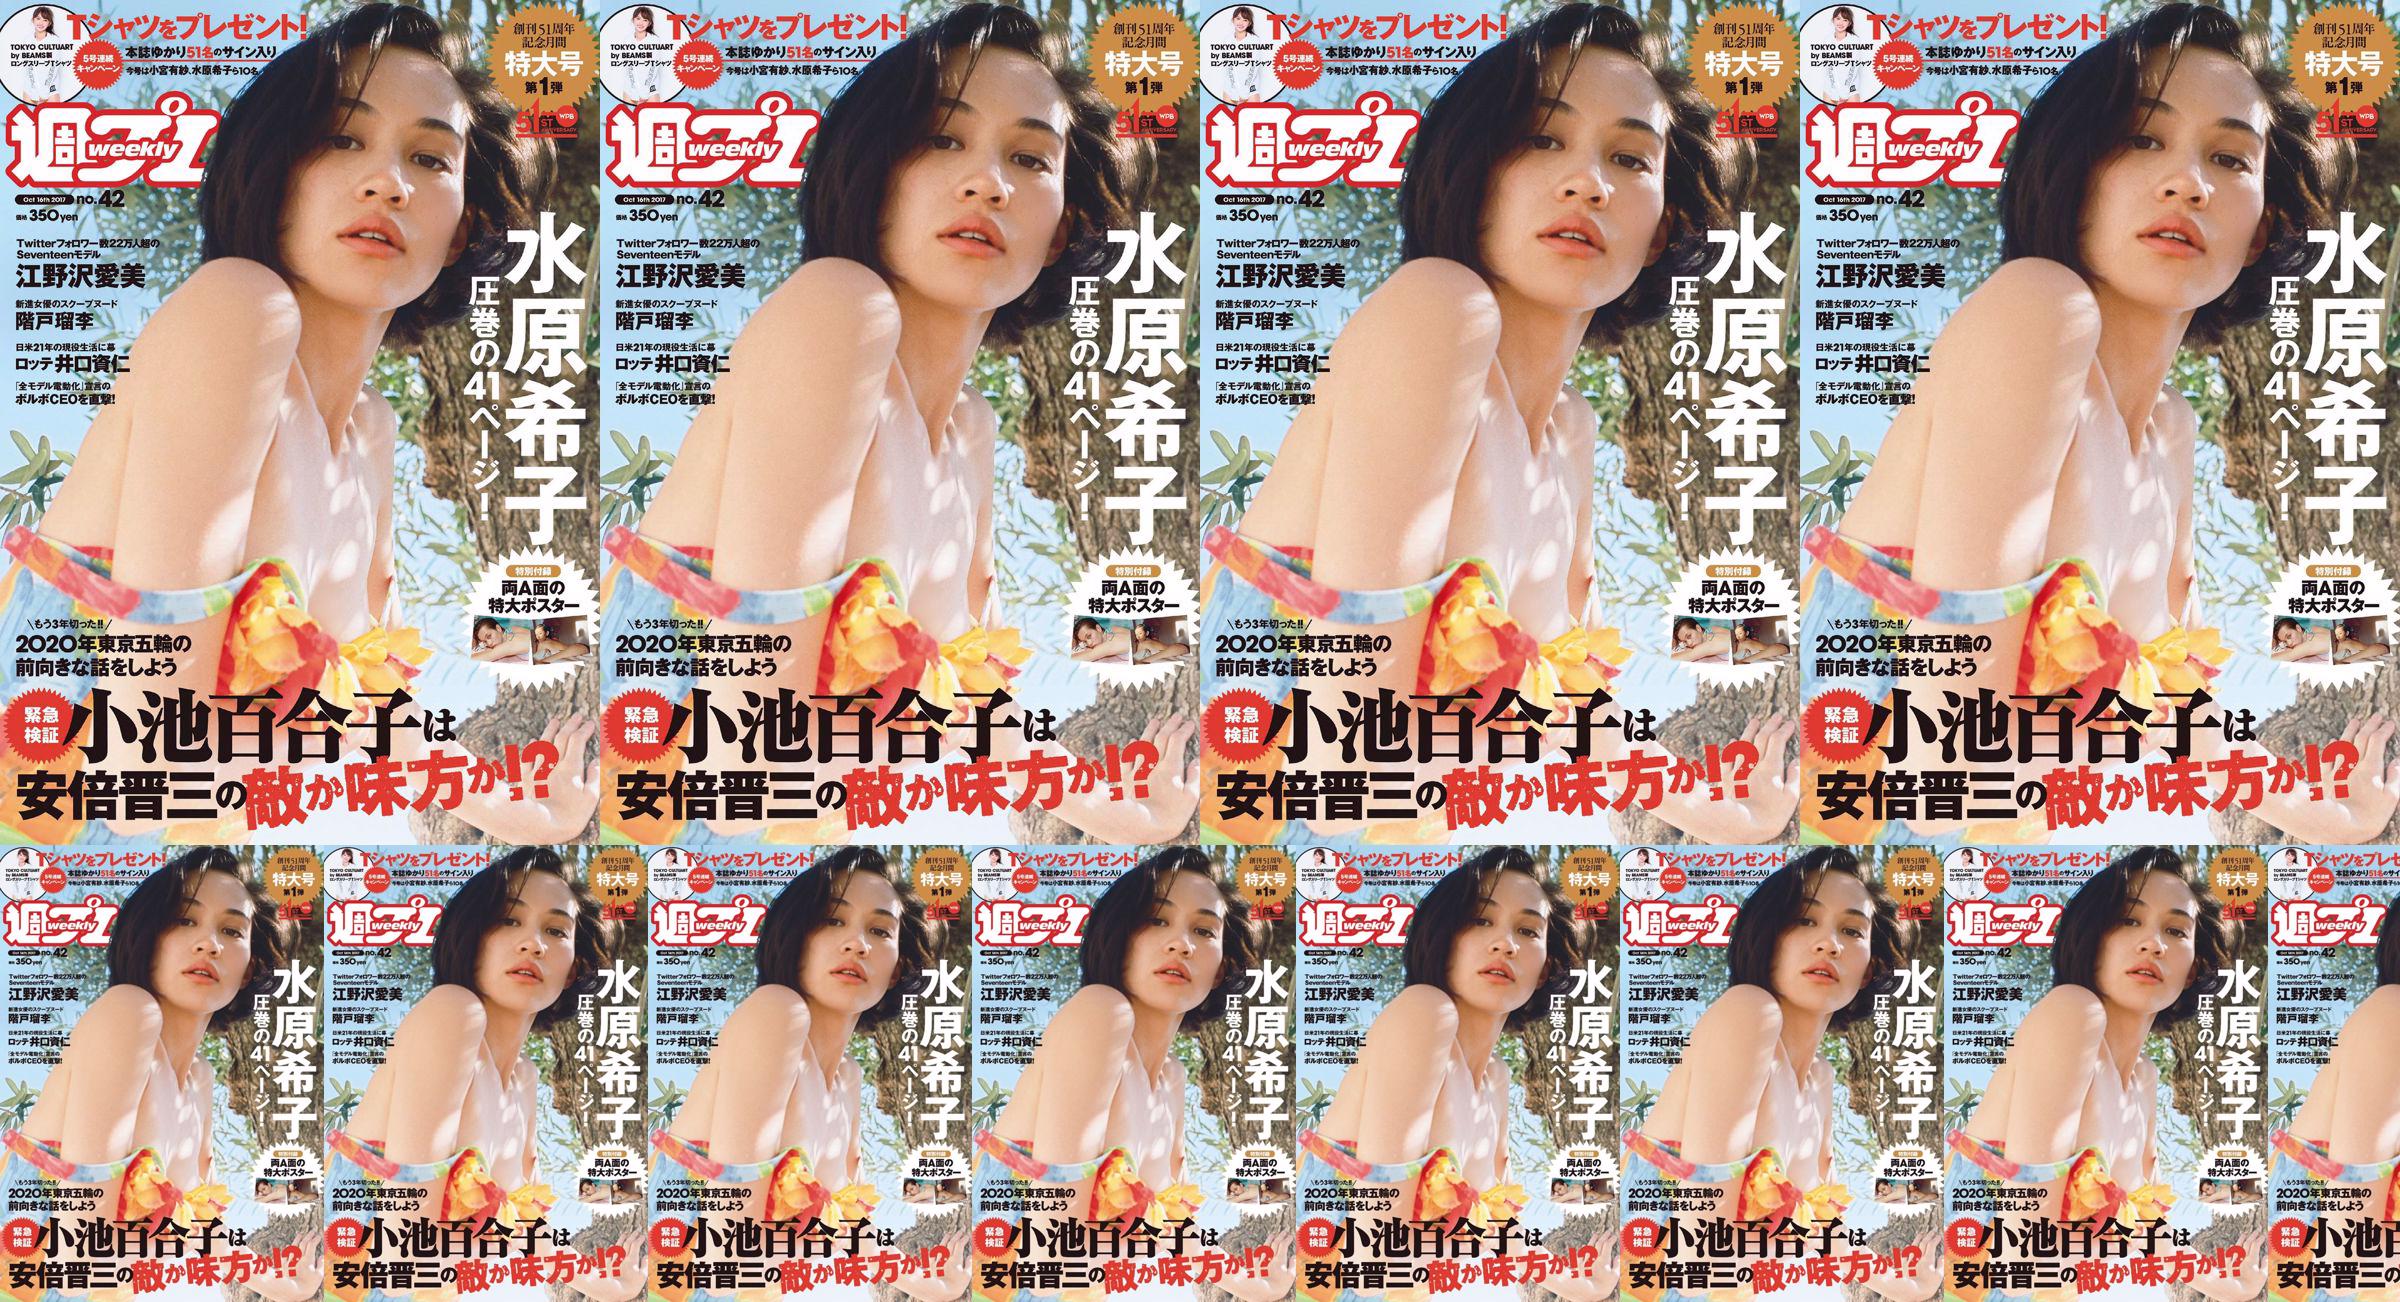 Kiko Mizuhara Manami Enosawa Serina Fukui Miu Nakamura Ruri Shinato [Weekly Playboy] 2017 No.42 Photo Magazine No.f30ce4 Page 5